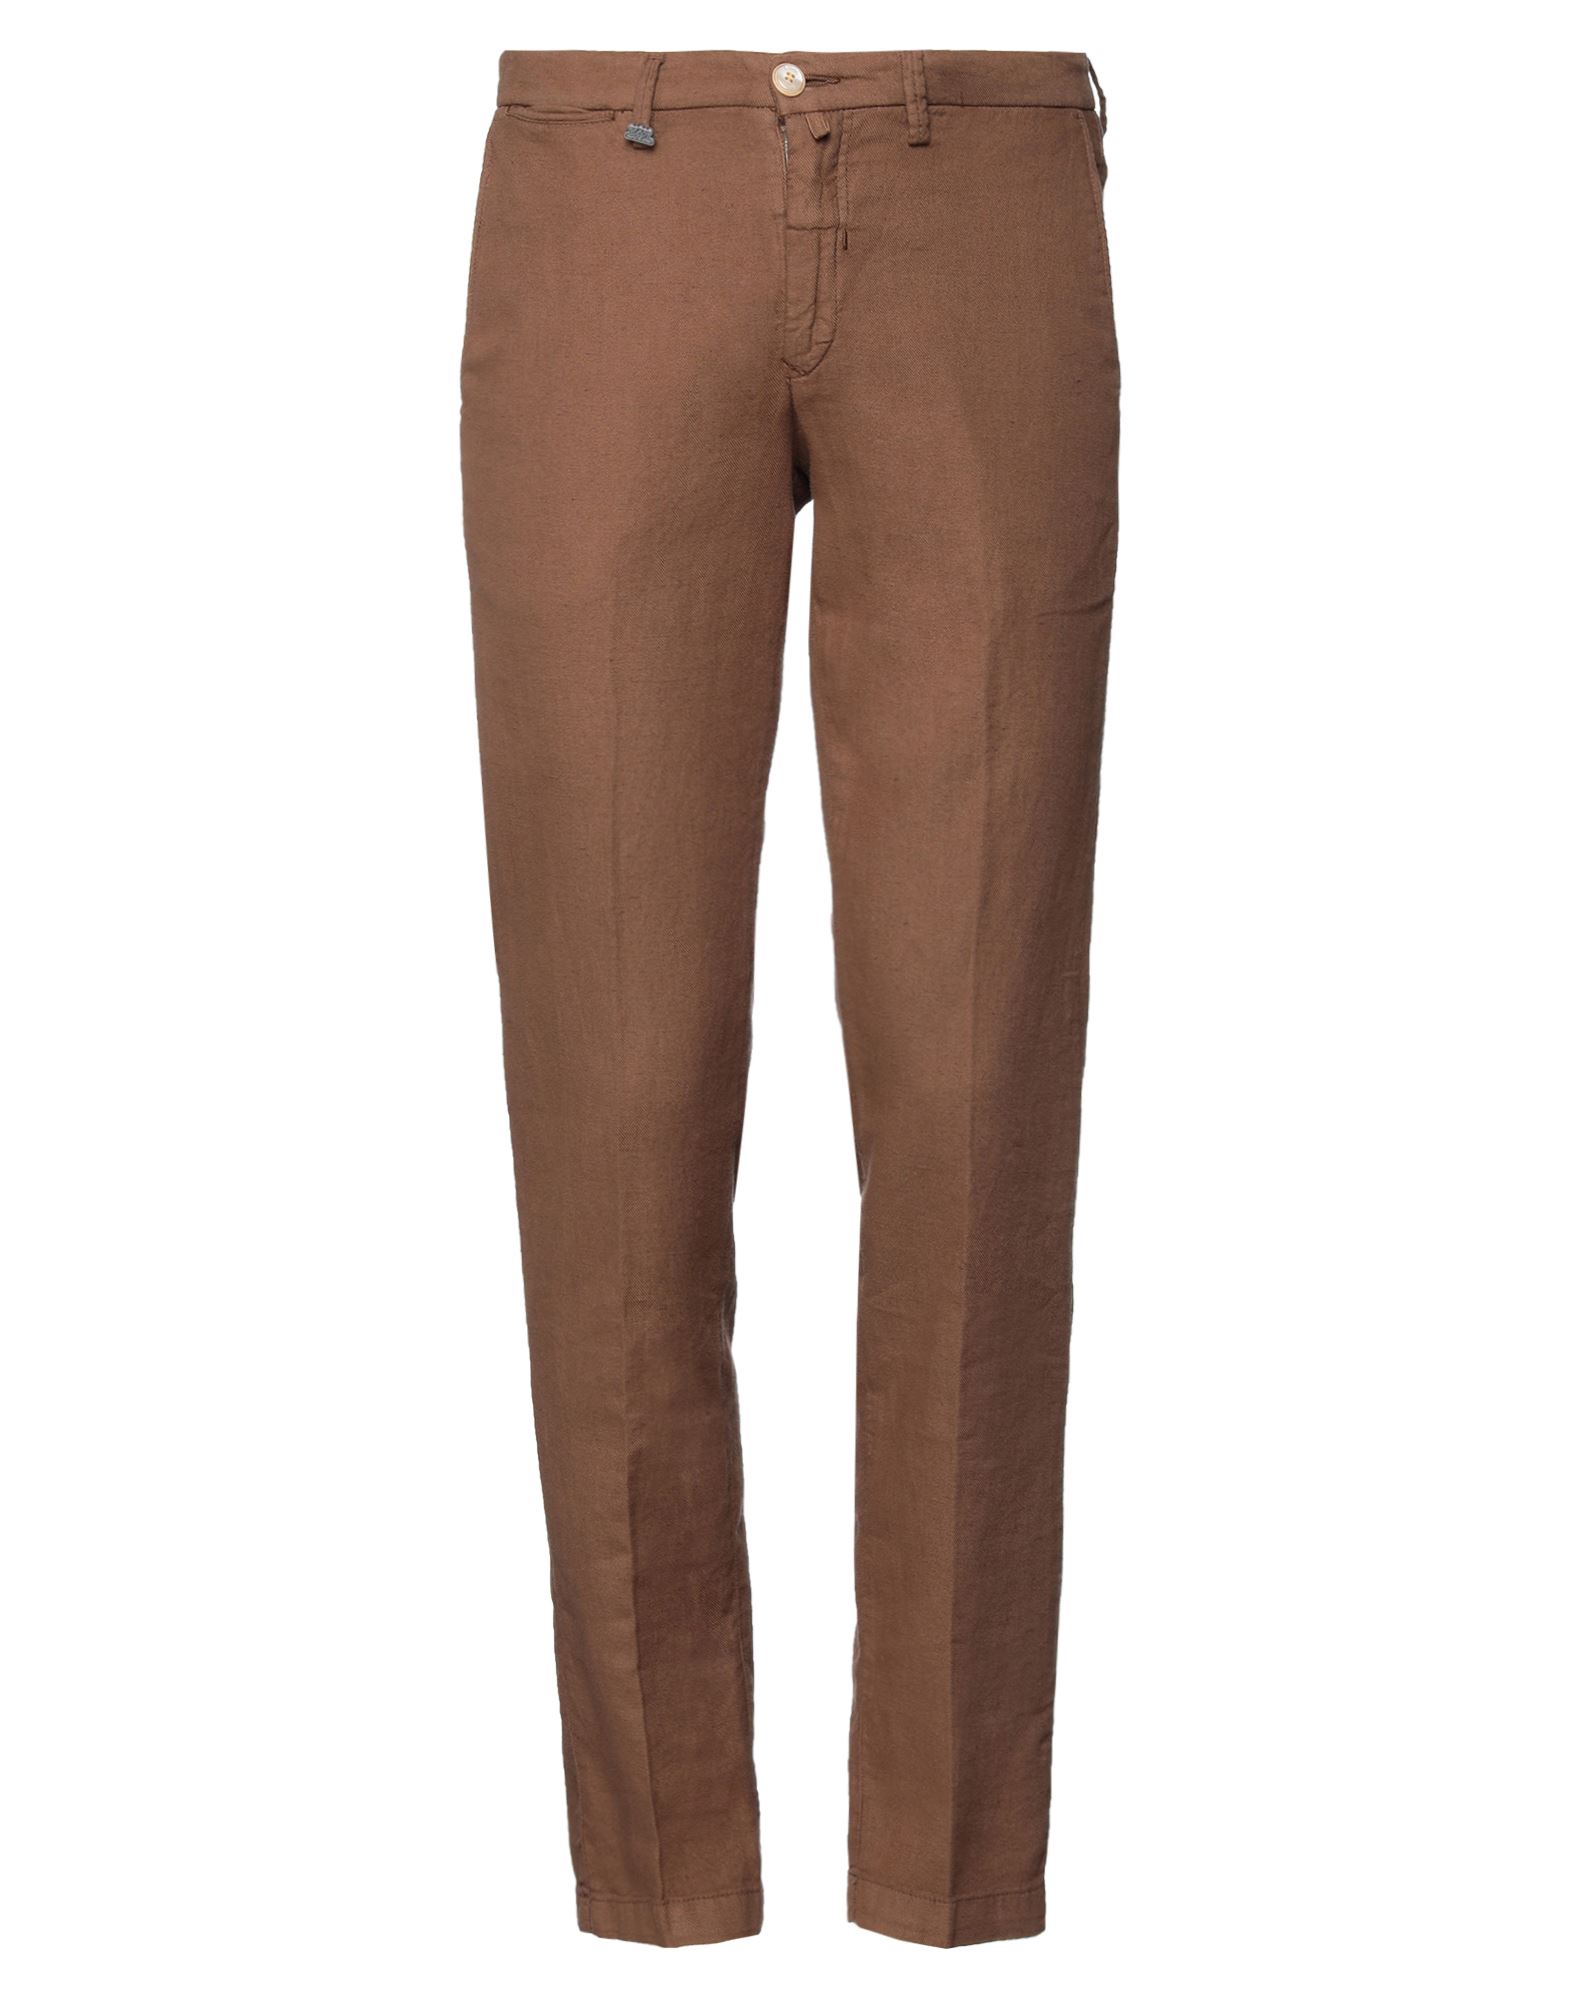 Shop Barbati Man Pants Brown Size 28 Cotton, Linen, Elastane